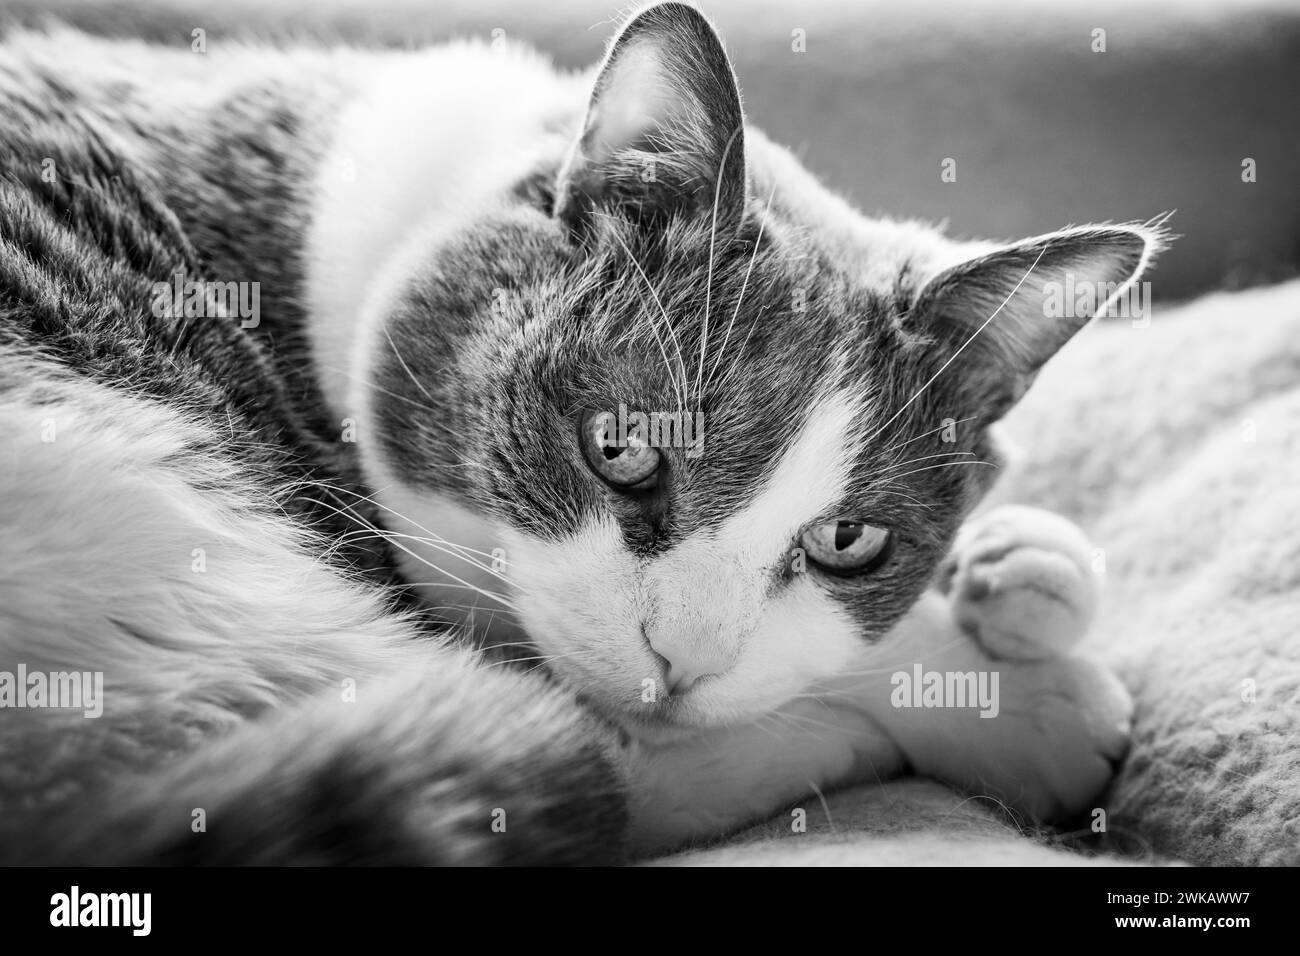 Gatto che appoggia la testa sulle zampe anteriori mentre guarda la telecamera. Foto Stock